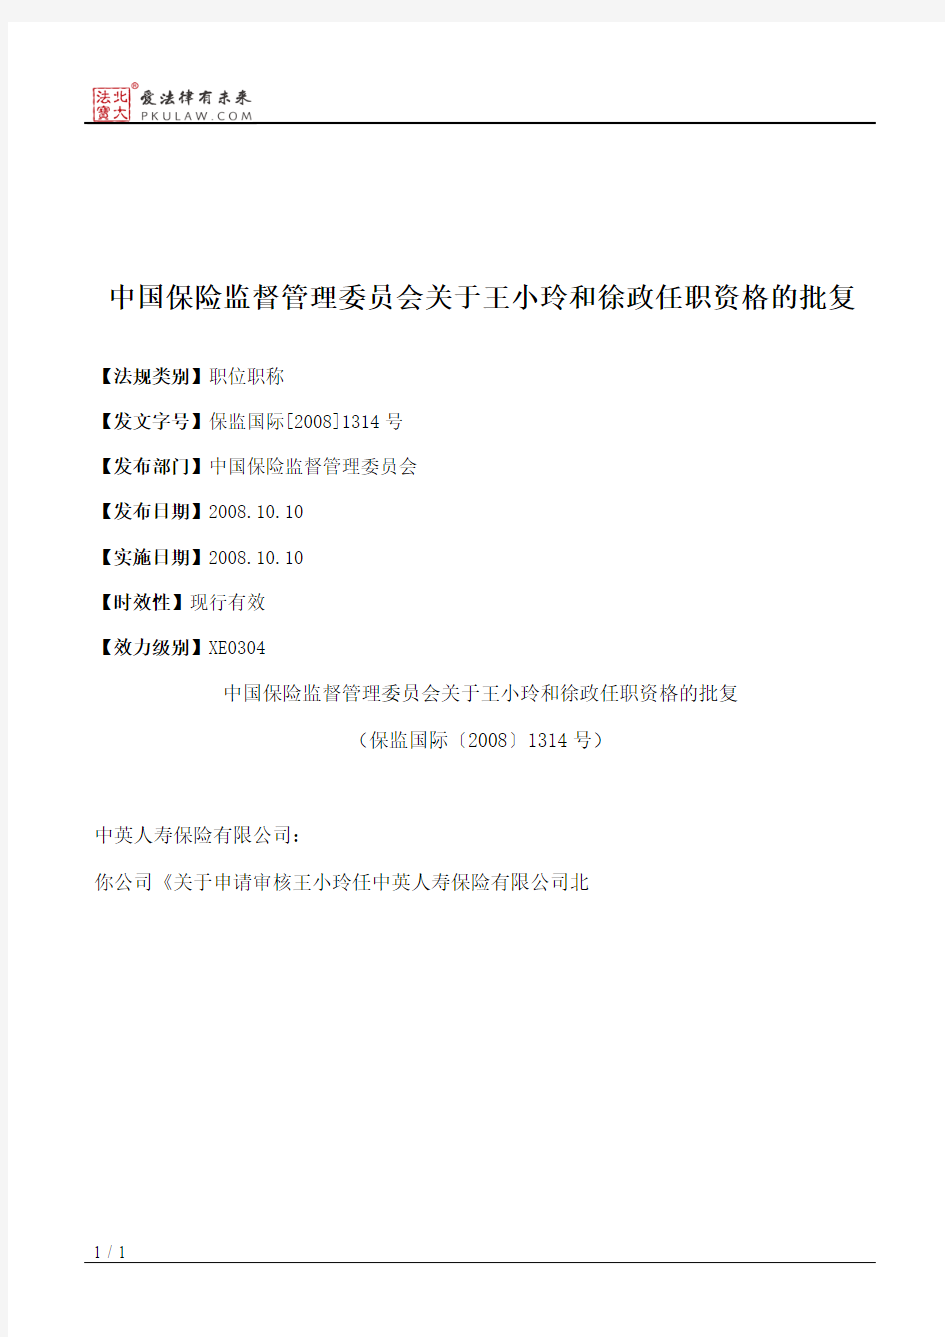 中国保险监督管理委员会关于王小玲和徐政任职资格的批复